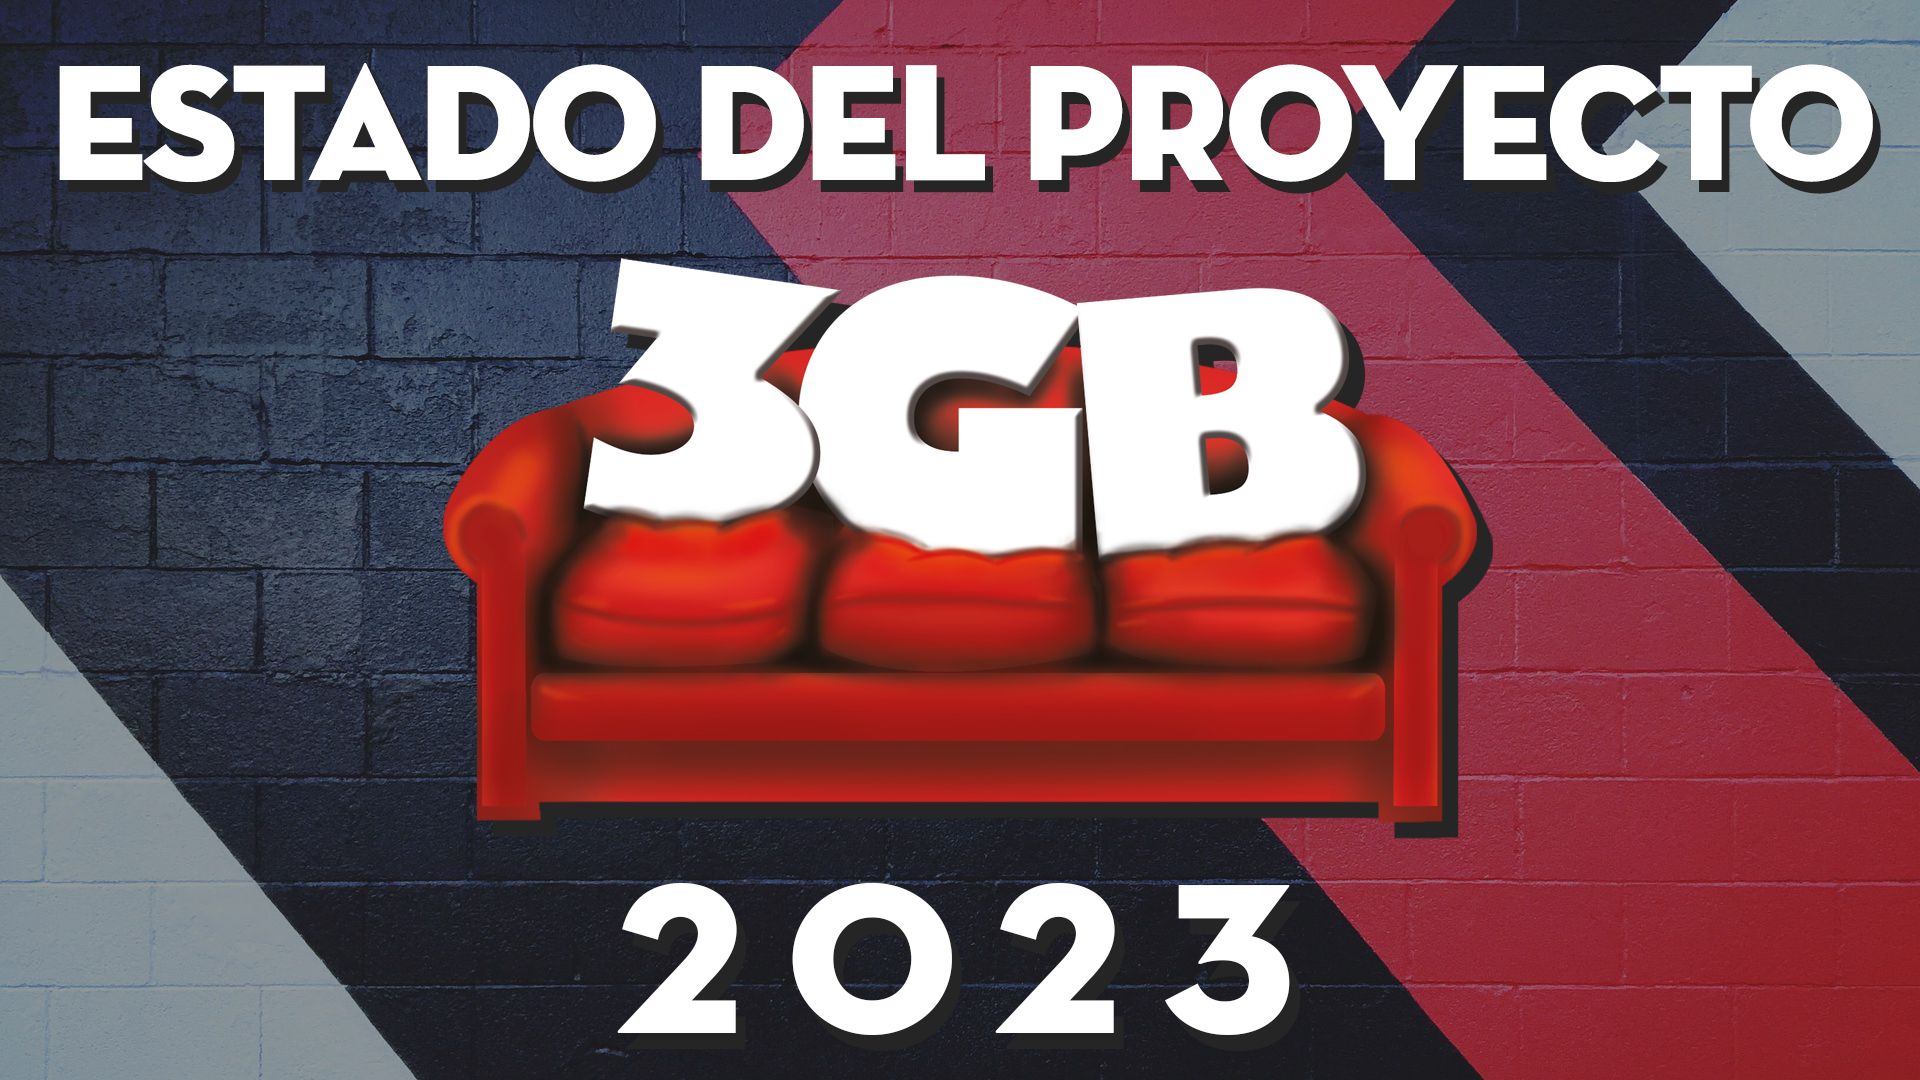 El Estado de 3GB en 2023